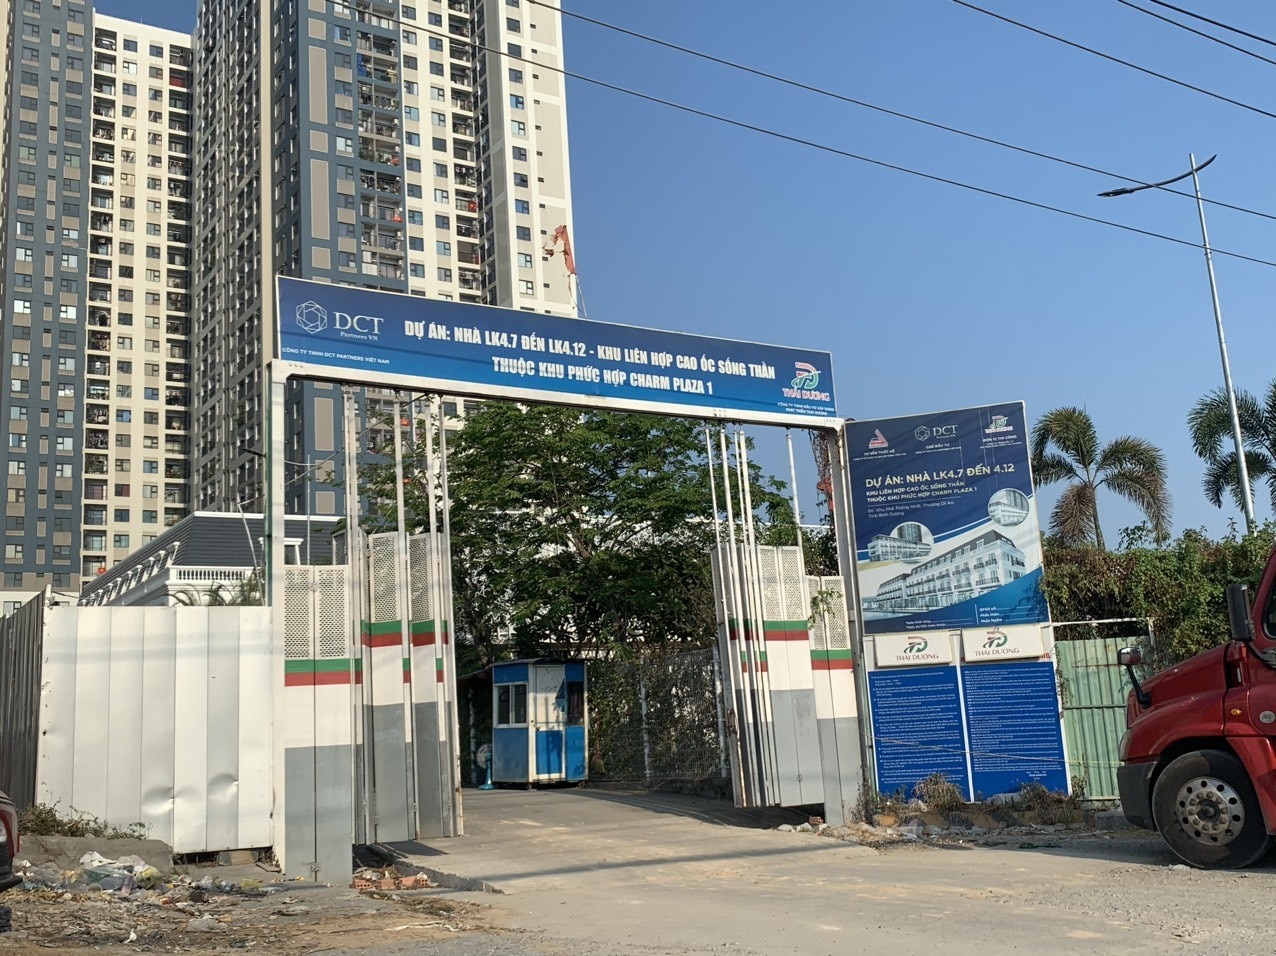 Immobilien – Die Bauabteilung von Binh Duong bietet Informationen zu vielen Immobilienprojekten (Abbildung 2).